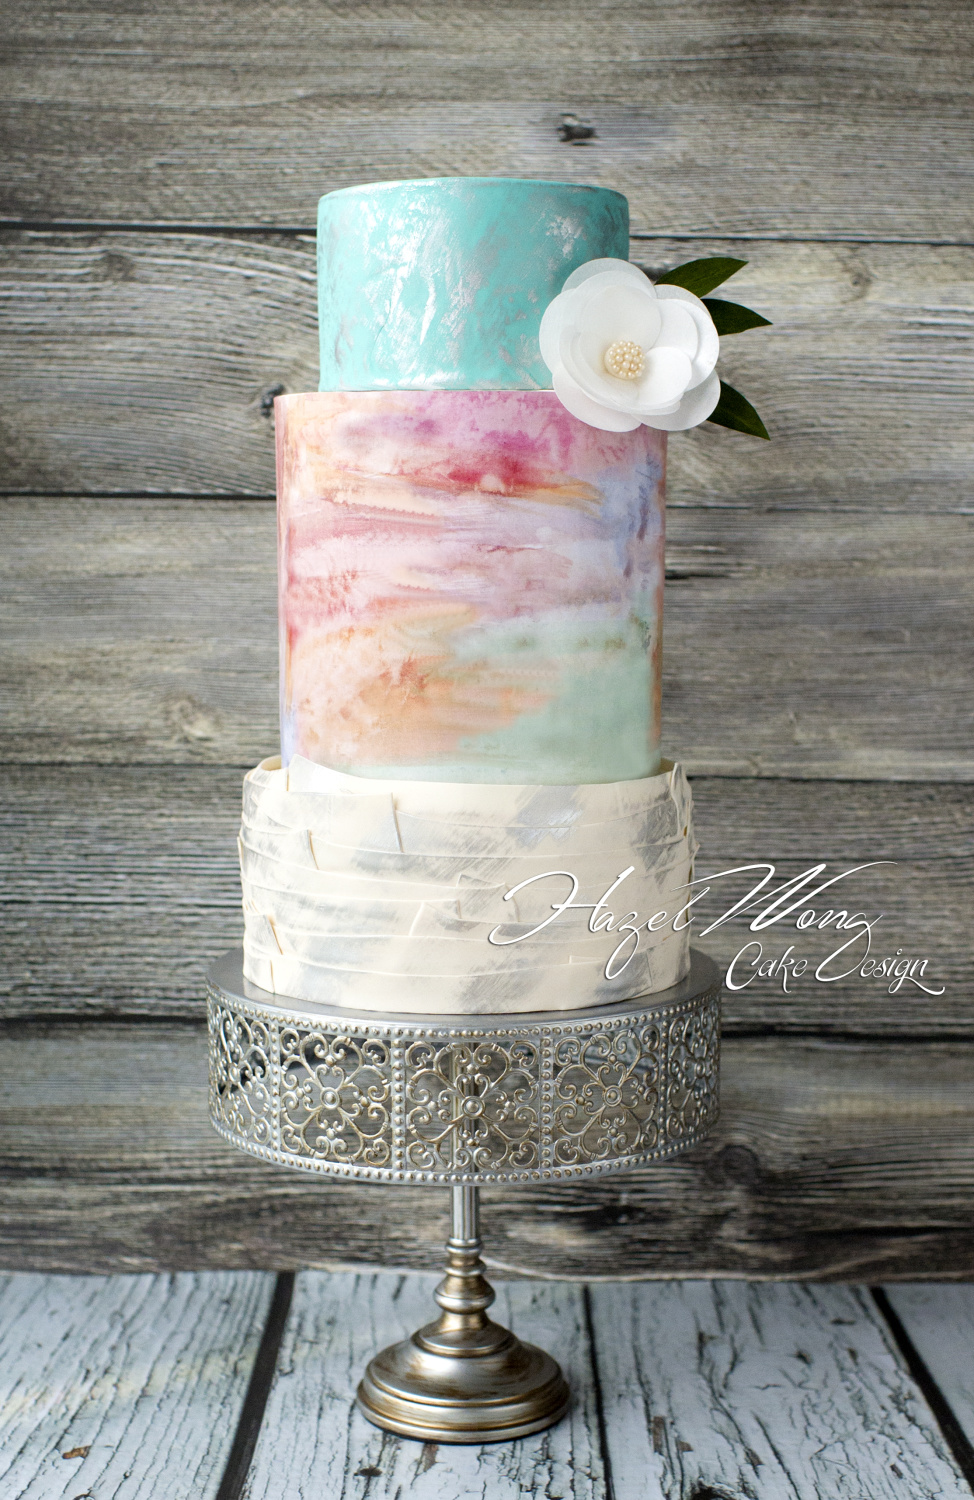 Cakesdecor Theme Wedding Cakes Part 6 Cakesdecor 